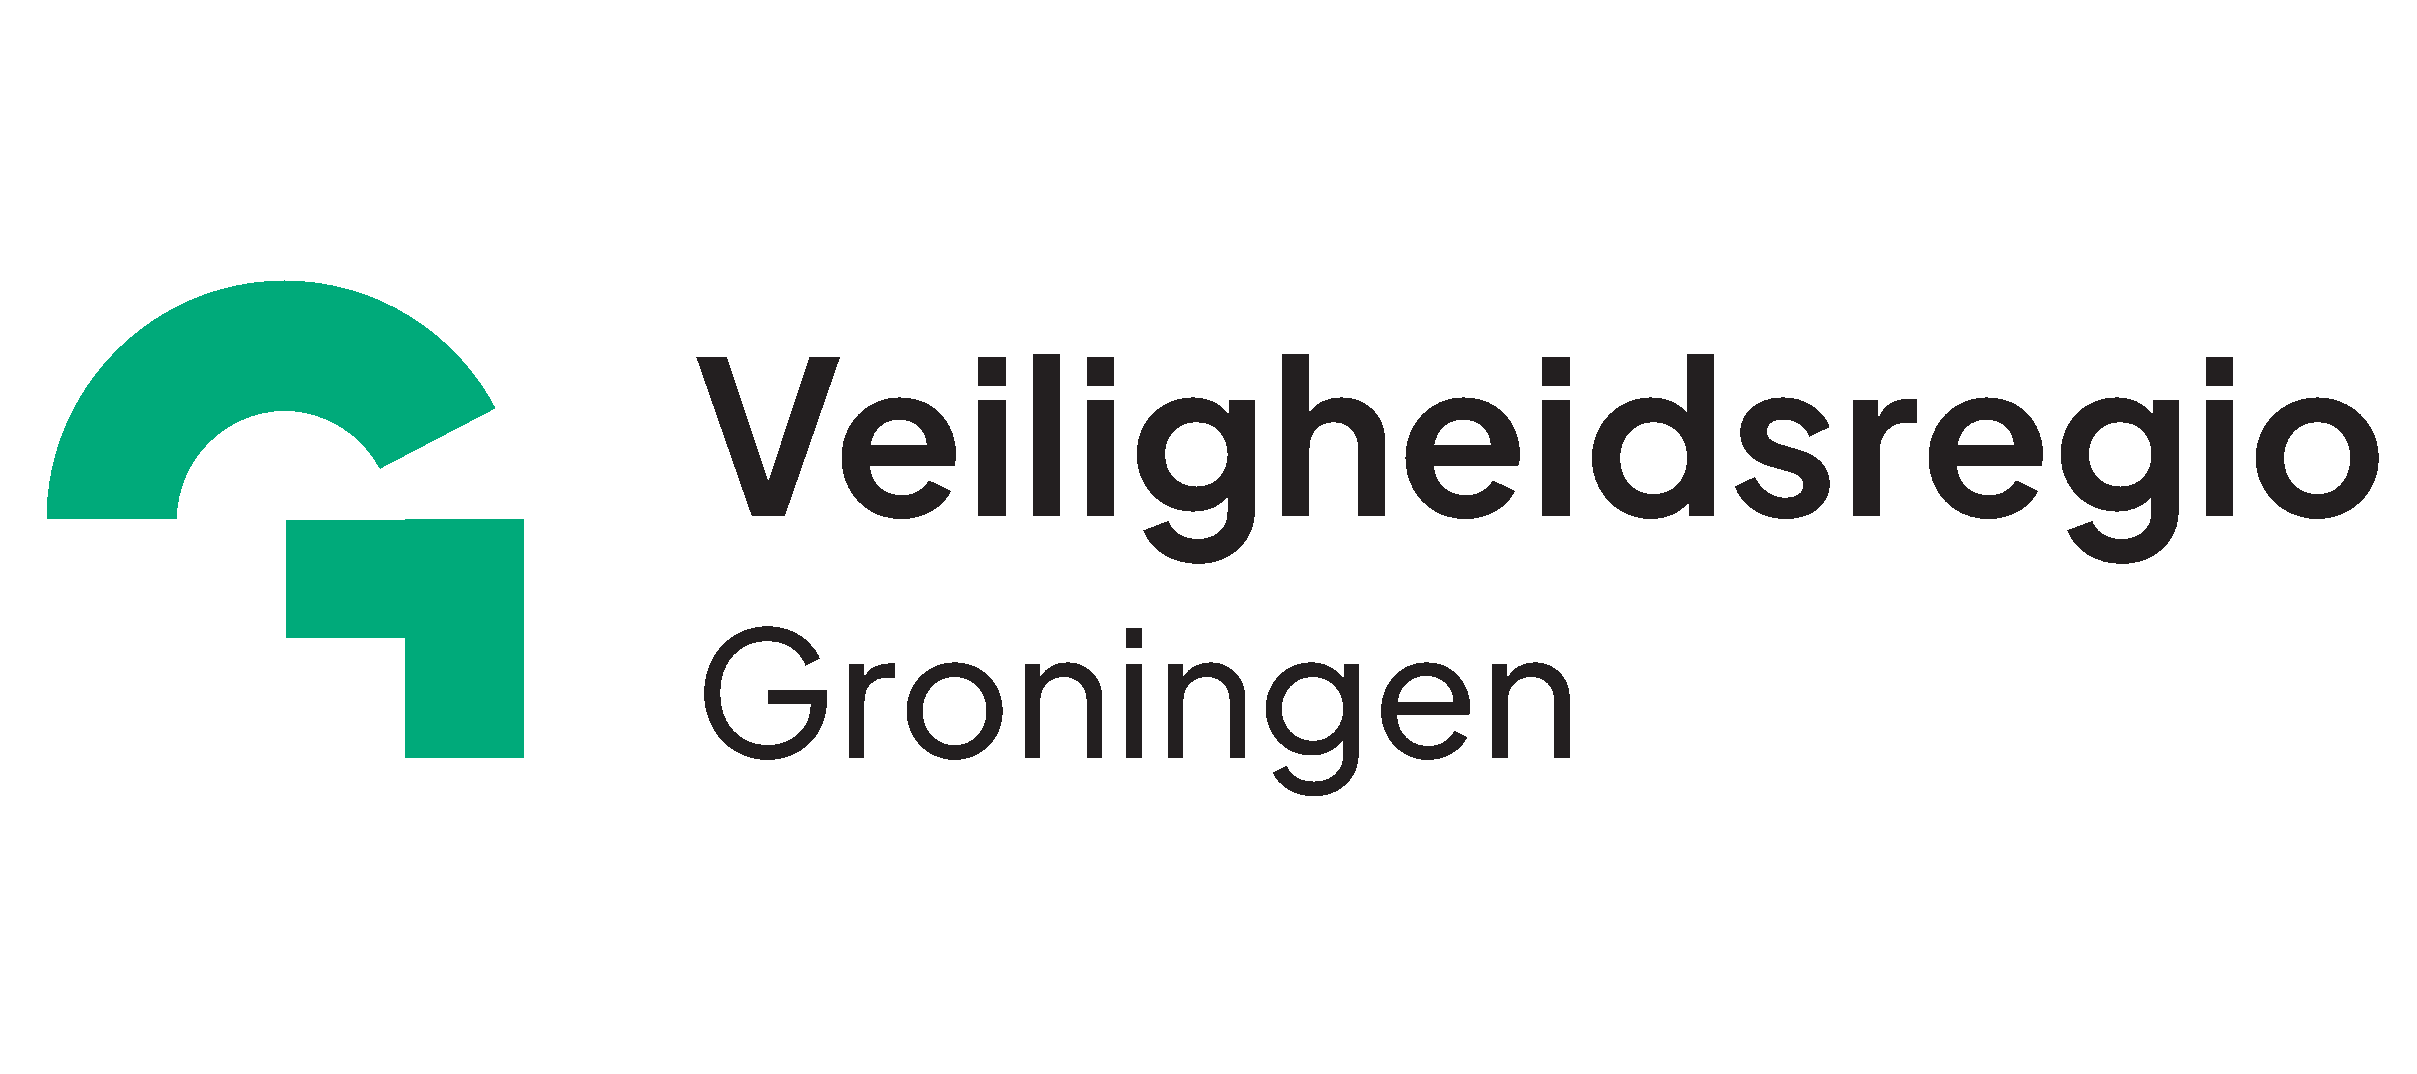 Veiligheidsregio Groningen